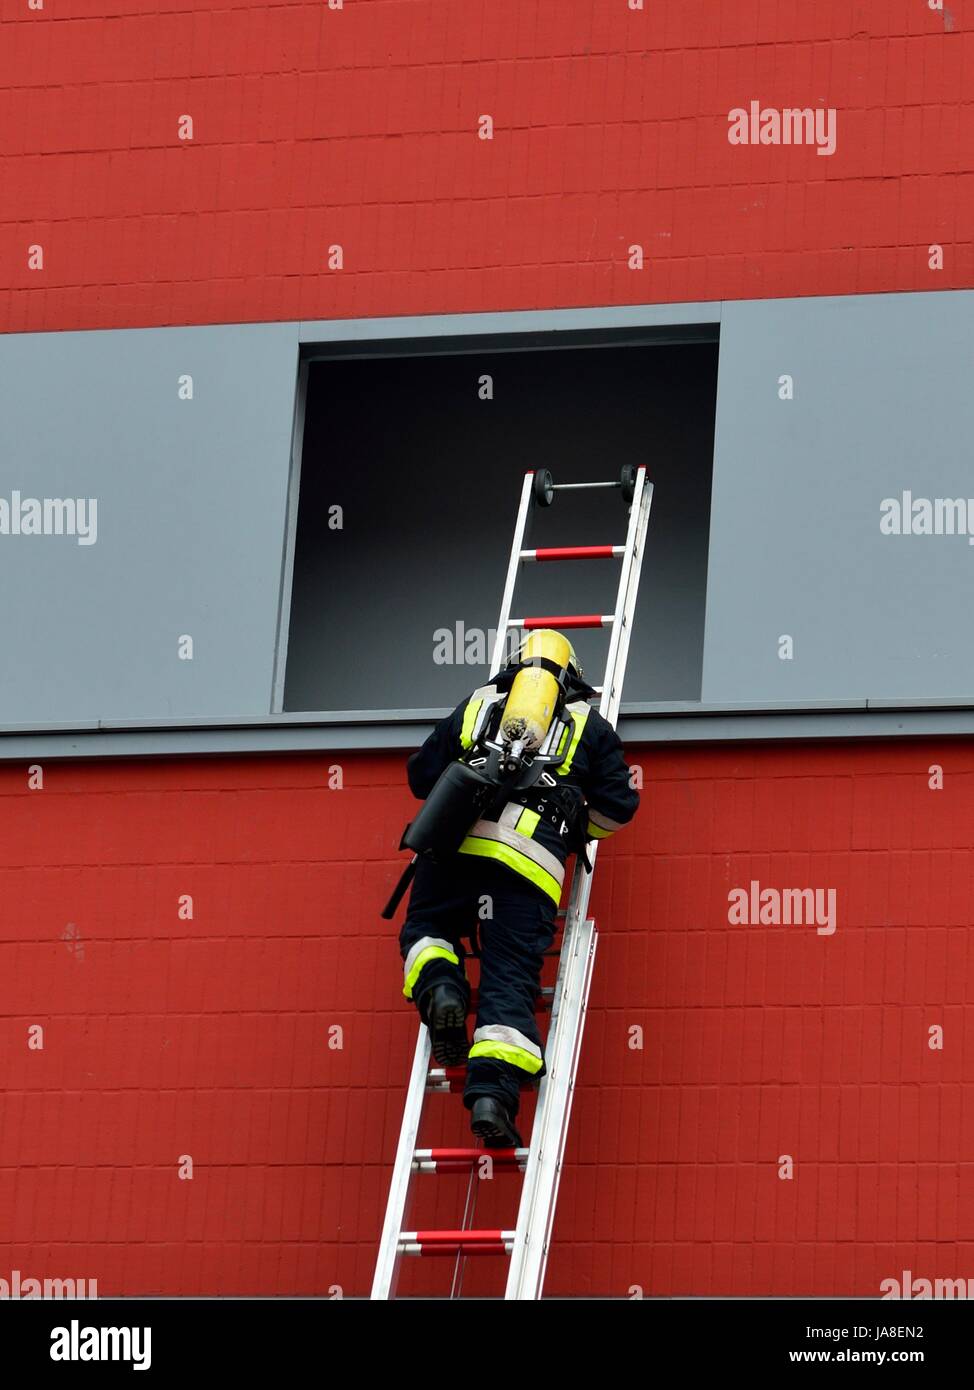 Feuerwehr: Retten, Bergen, Schützen Feuerwehrmann mit Leiter beim einsteigen in eine Fensteröffnung zur Rettung von Menschen Stock Photo